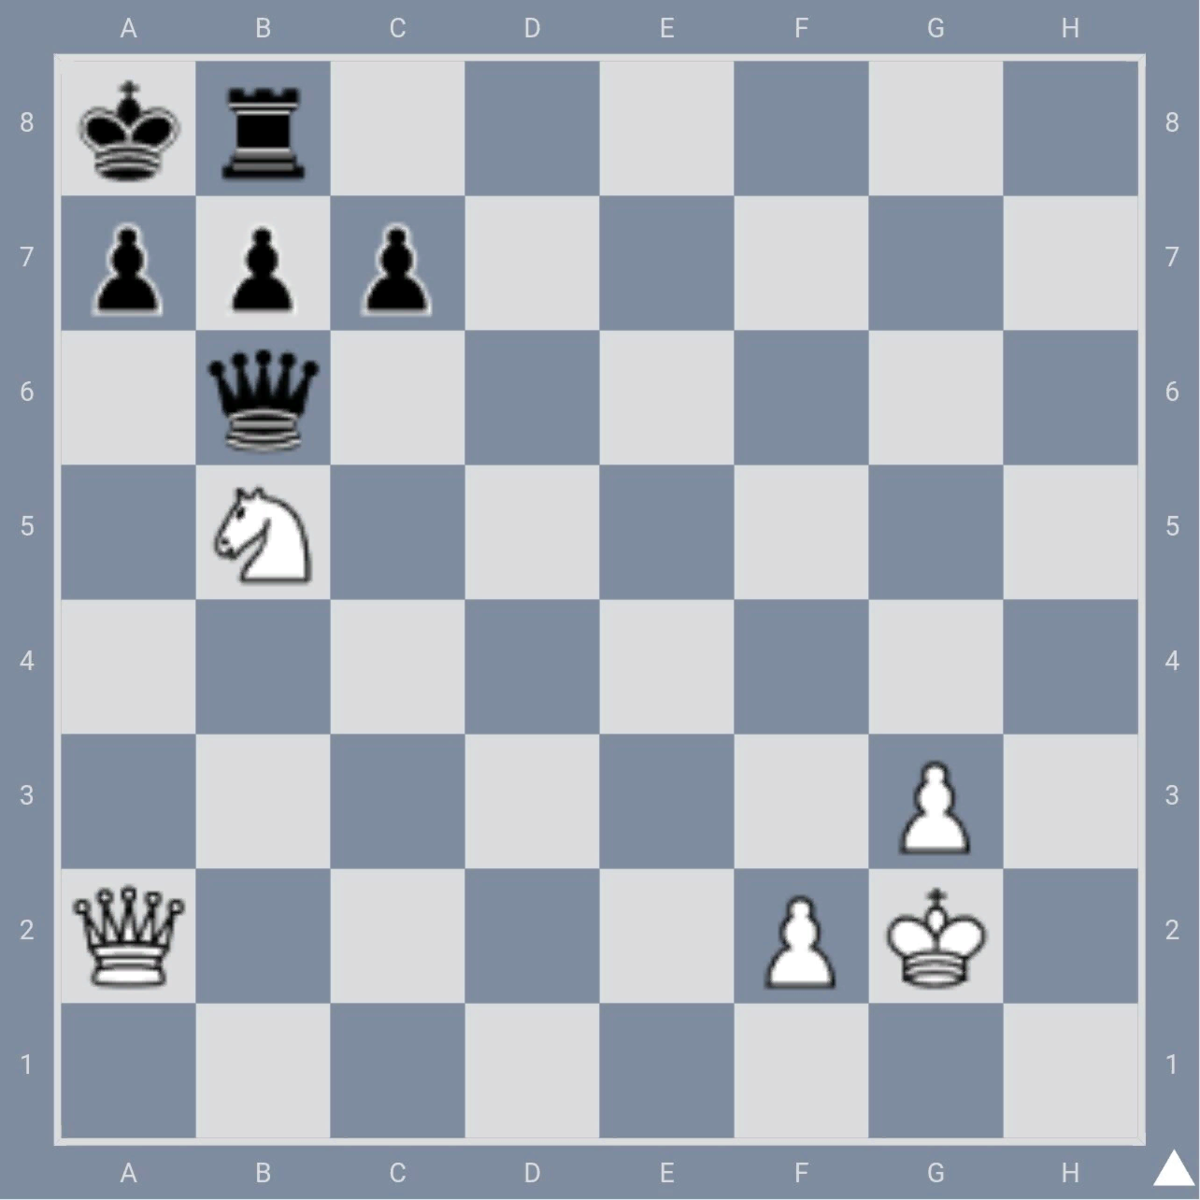 Мат в 2 хода в шахматах задачи